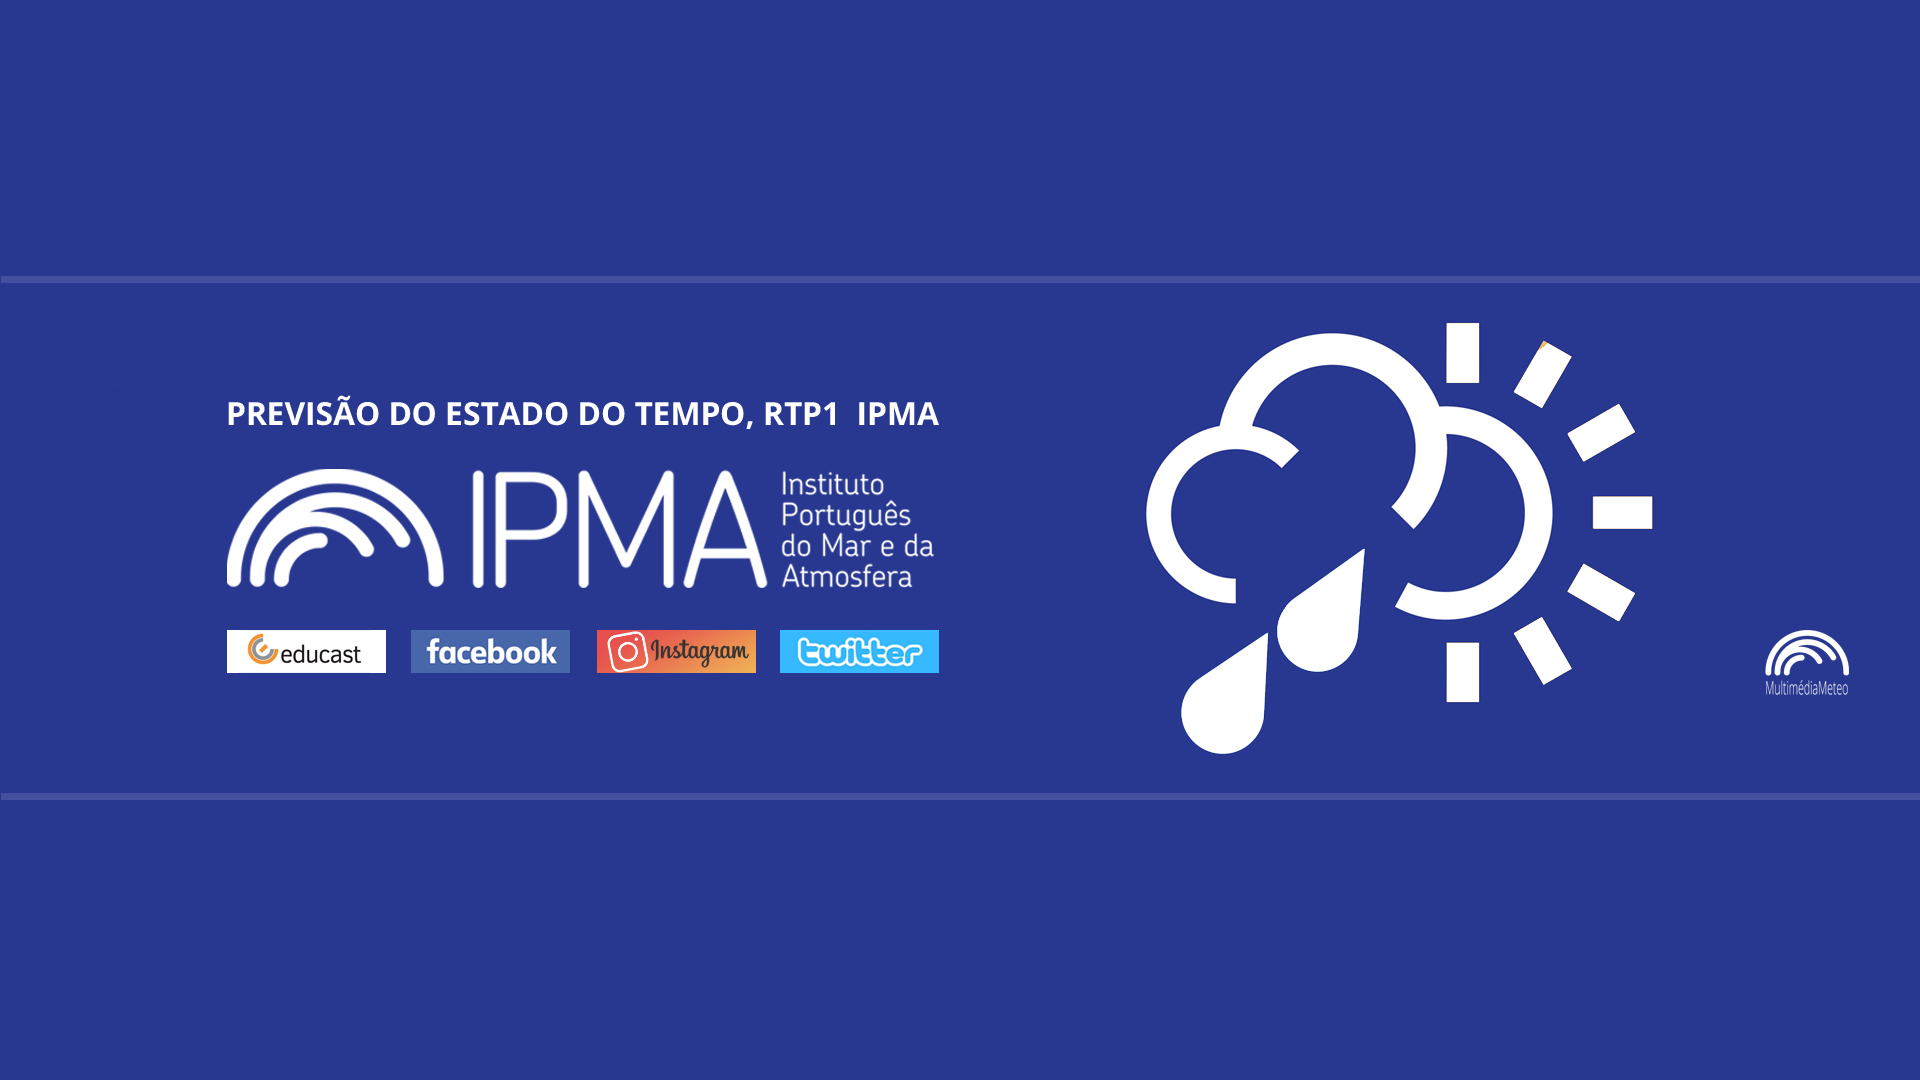  Previsão do estado do tempo, RTP1, 19-01-2022, IPMA.